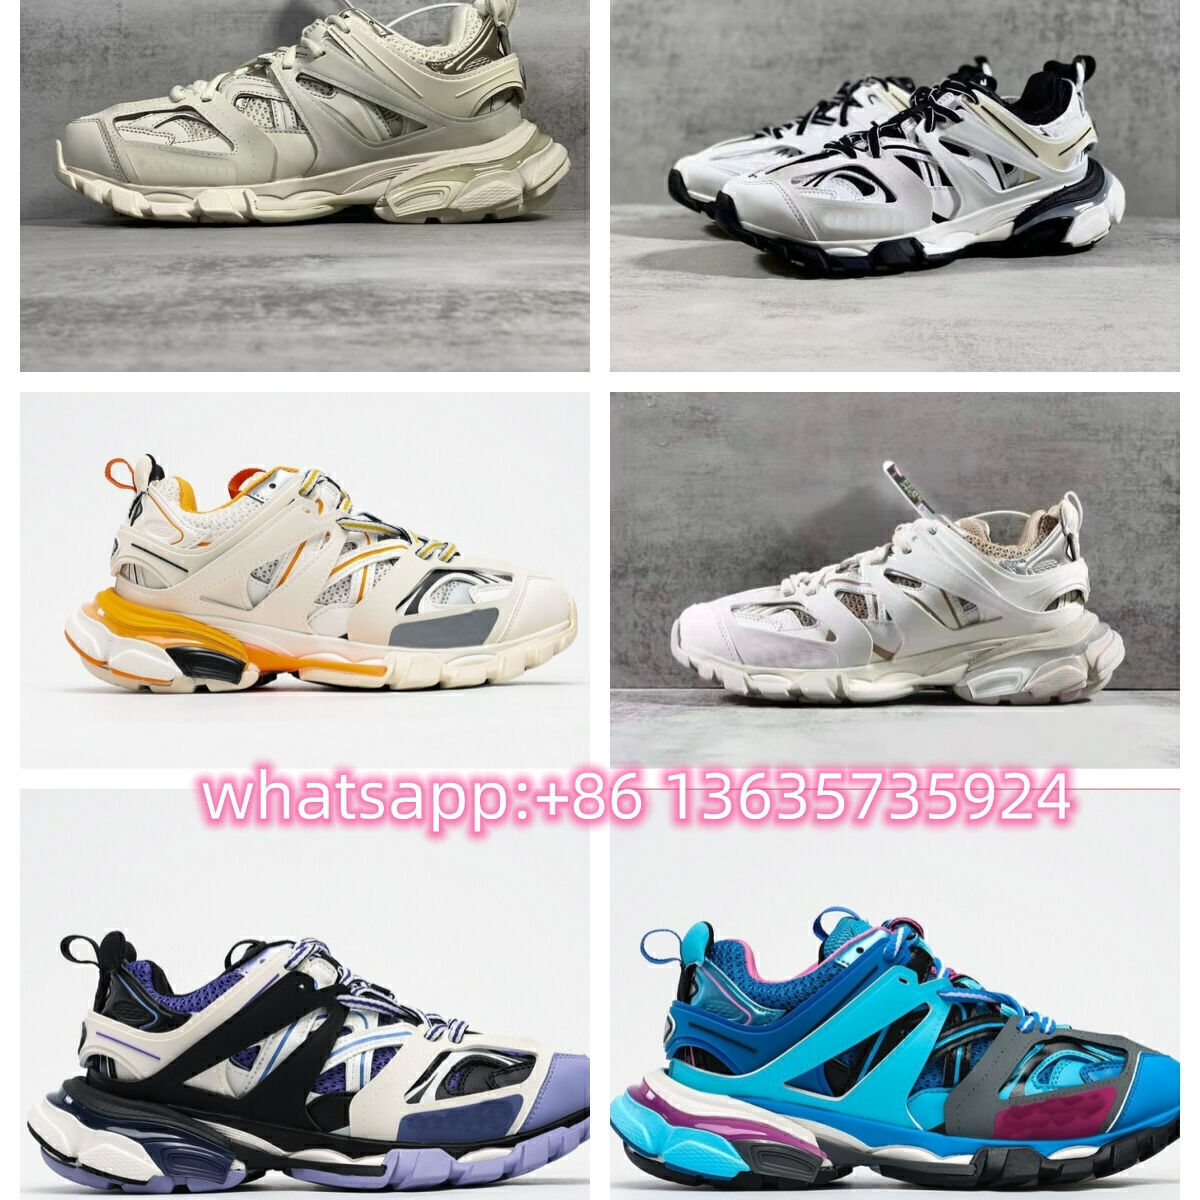 Replicas Shoes Women Sneaker Yupoo Shoes Outdoor Sport Shoe of